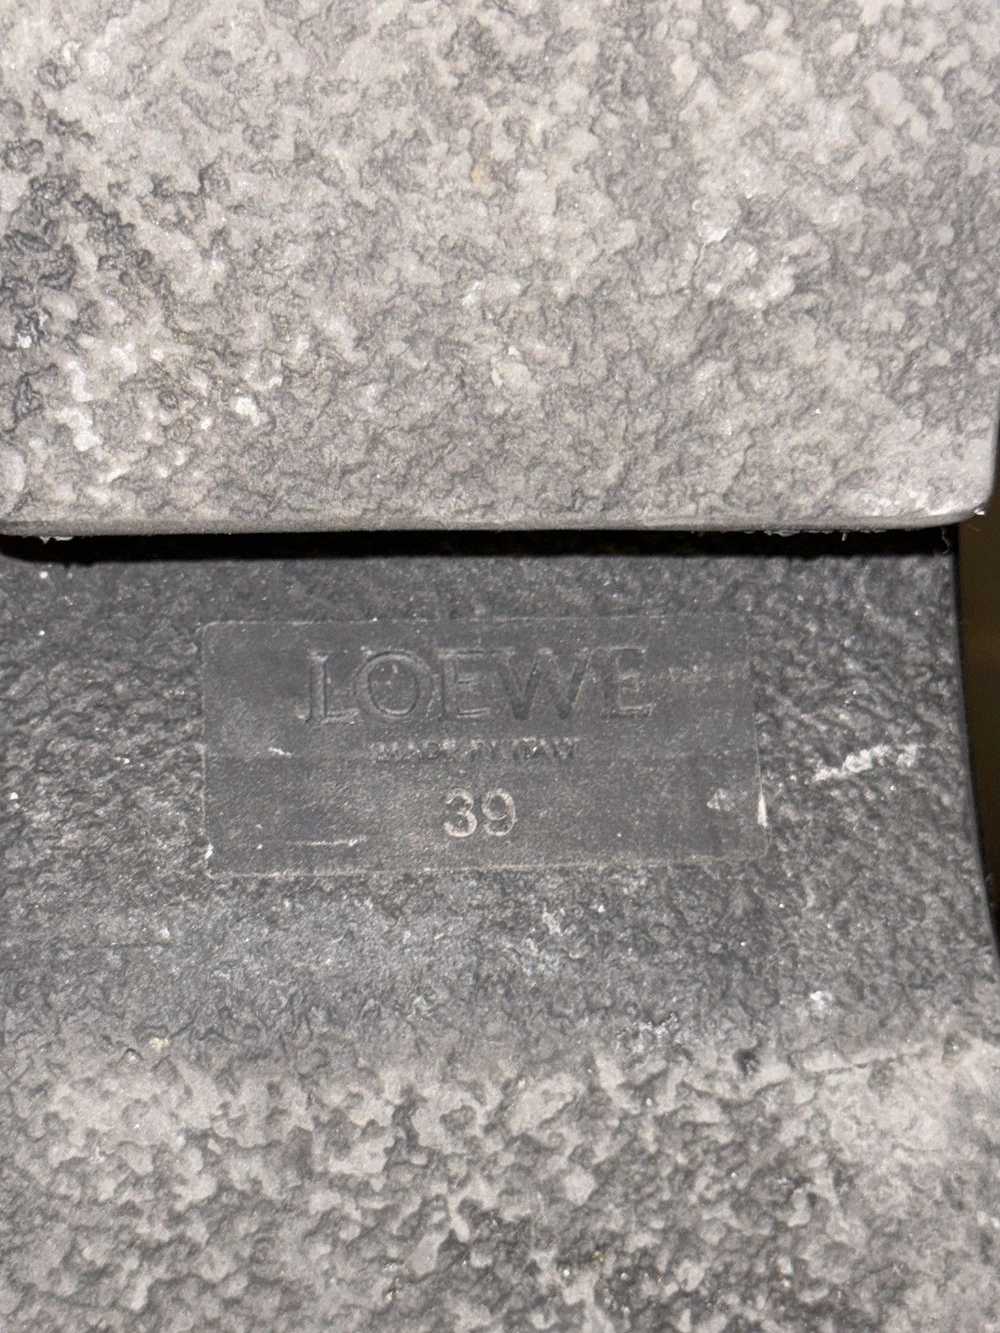 Loewe Loewe croc leather loafer platformed mule - image 7